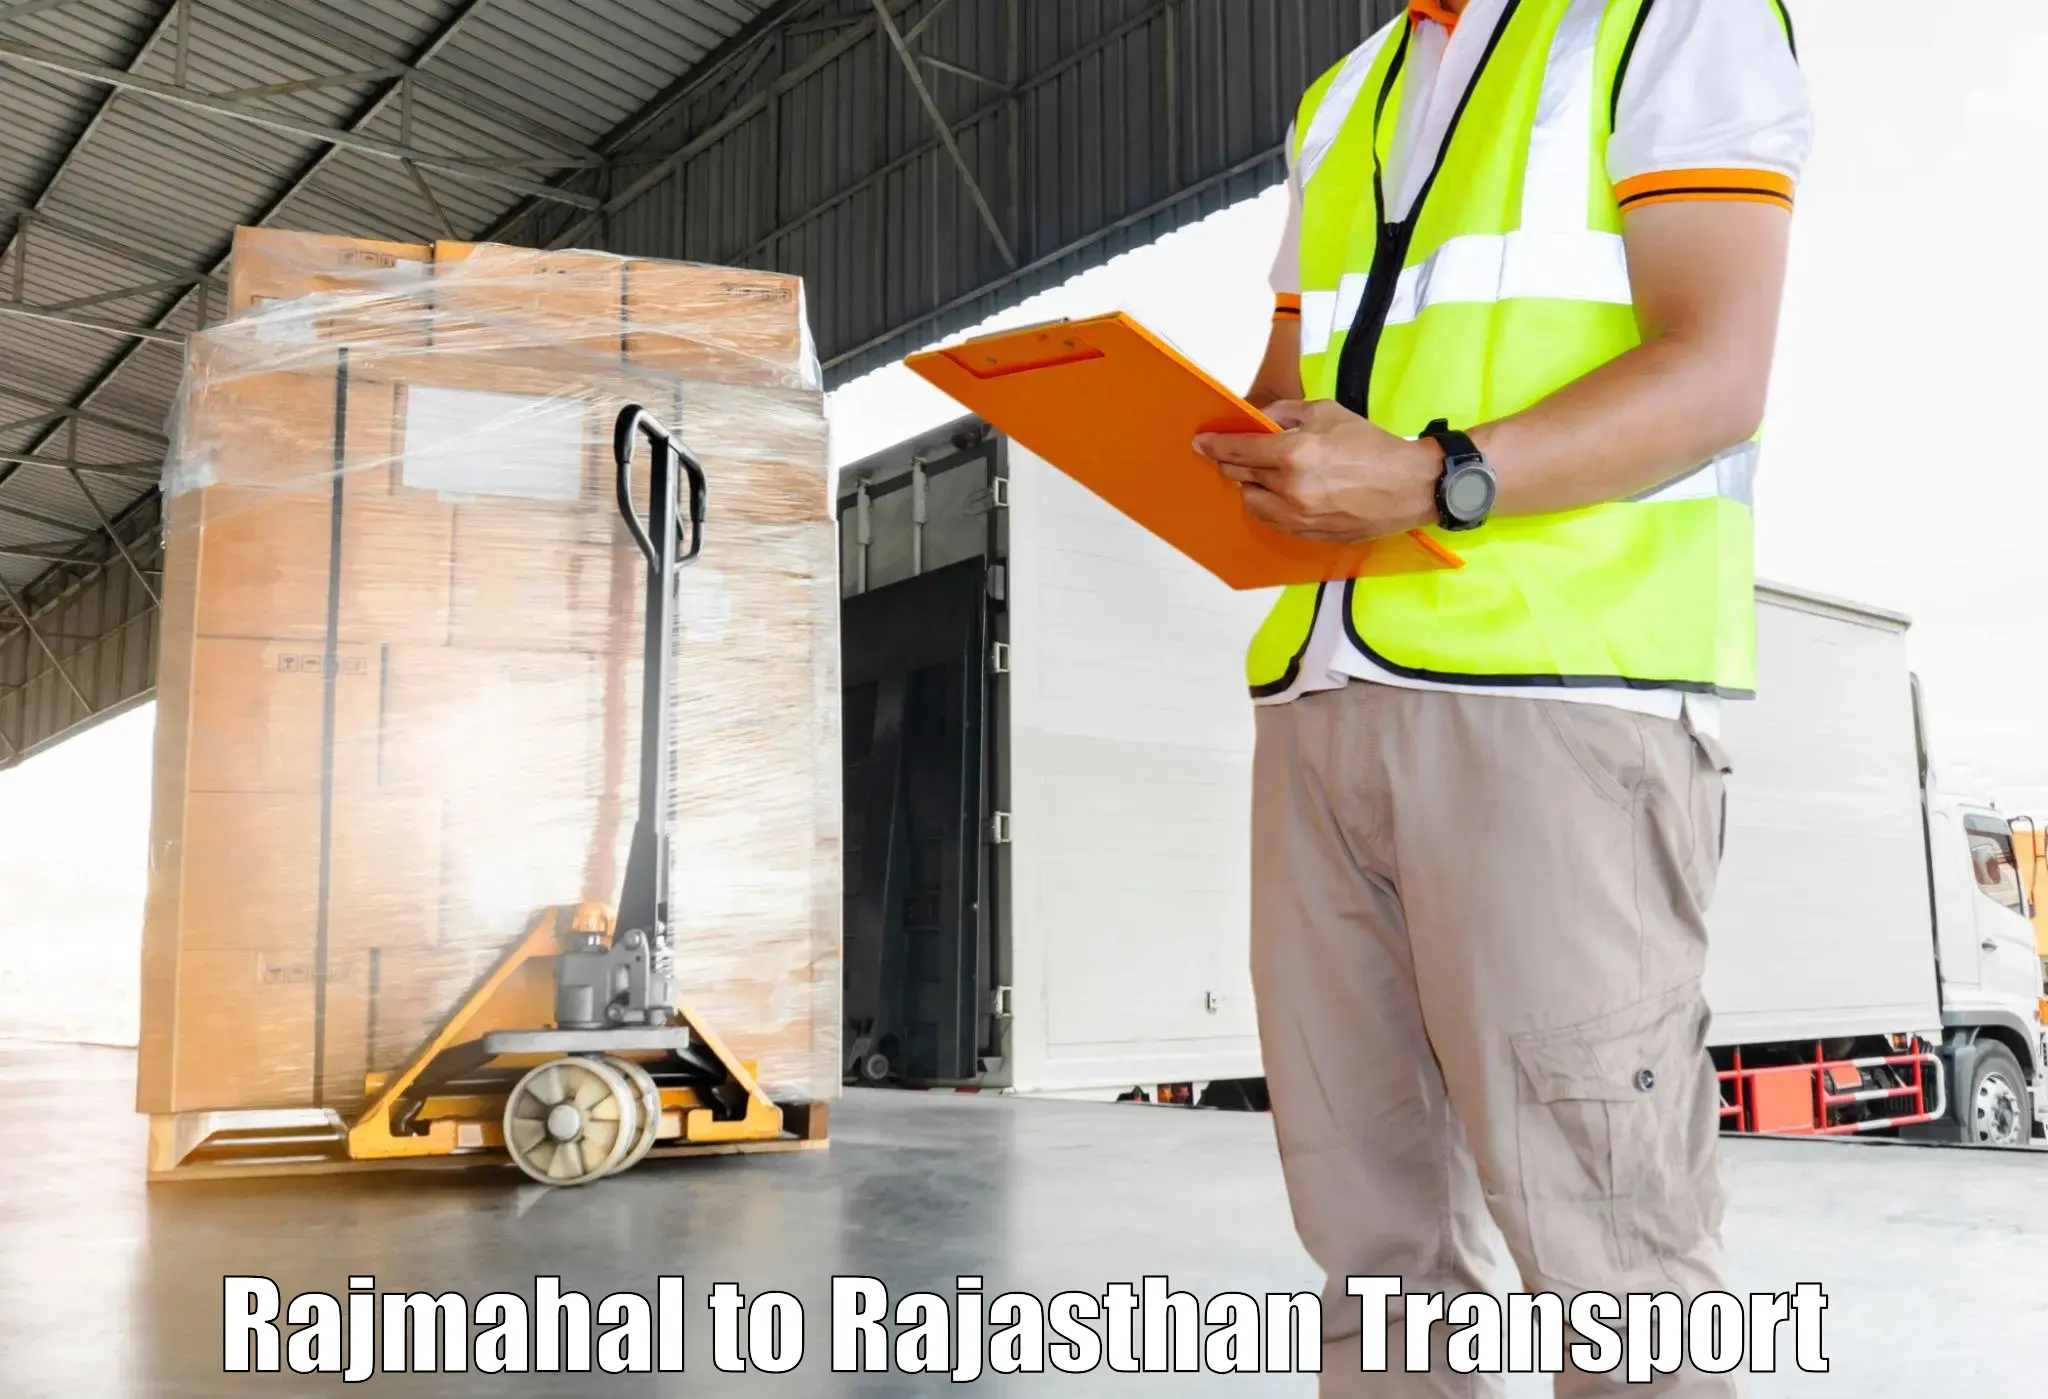 Air cargo transport services Rajmahal to Baran